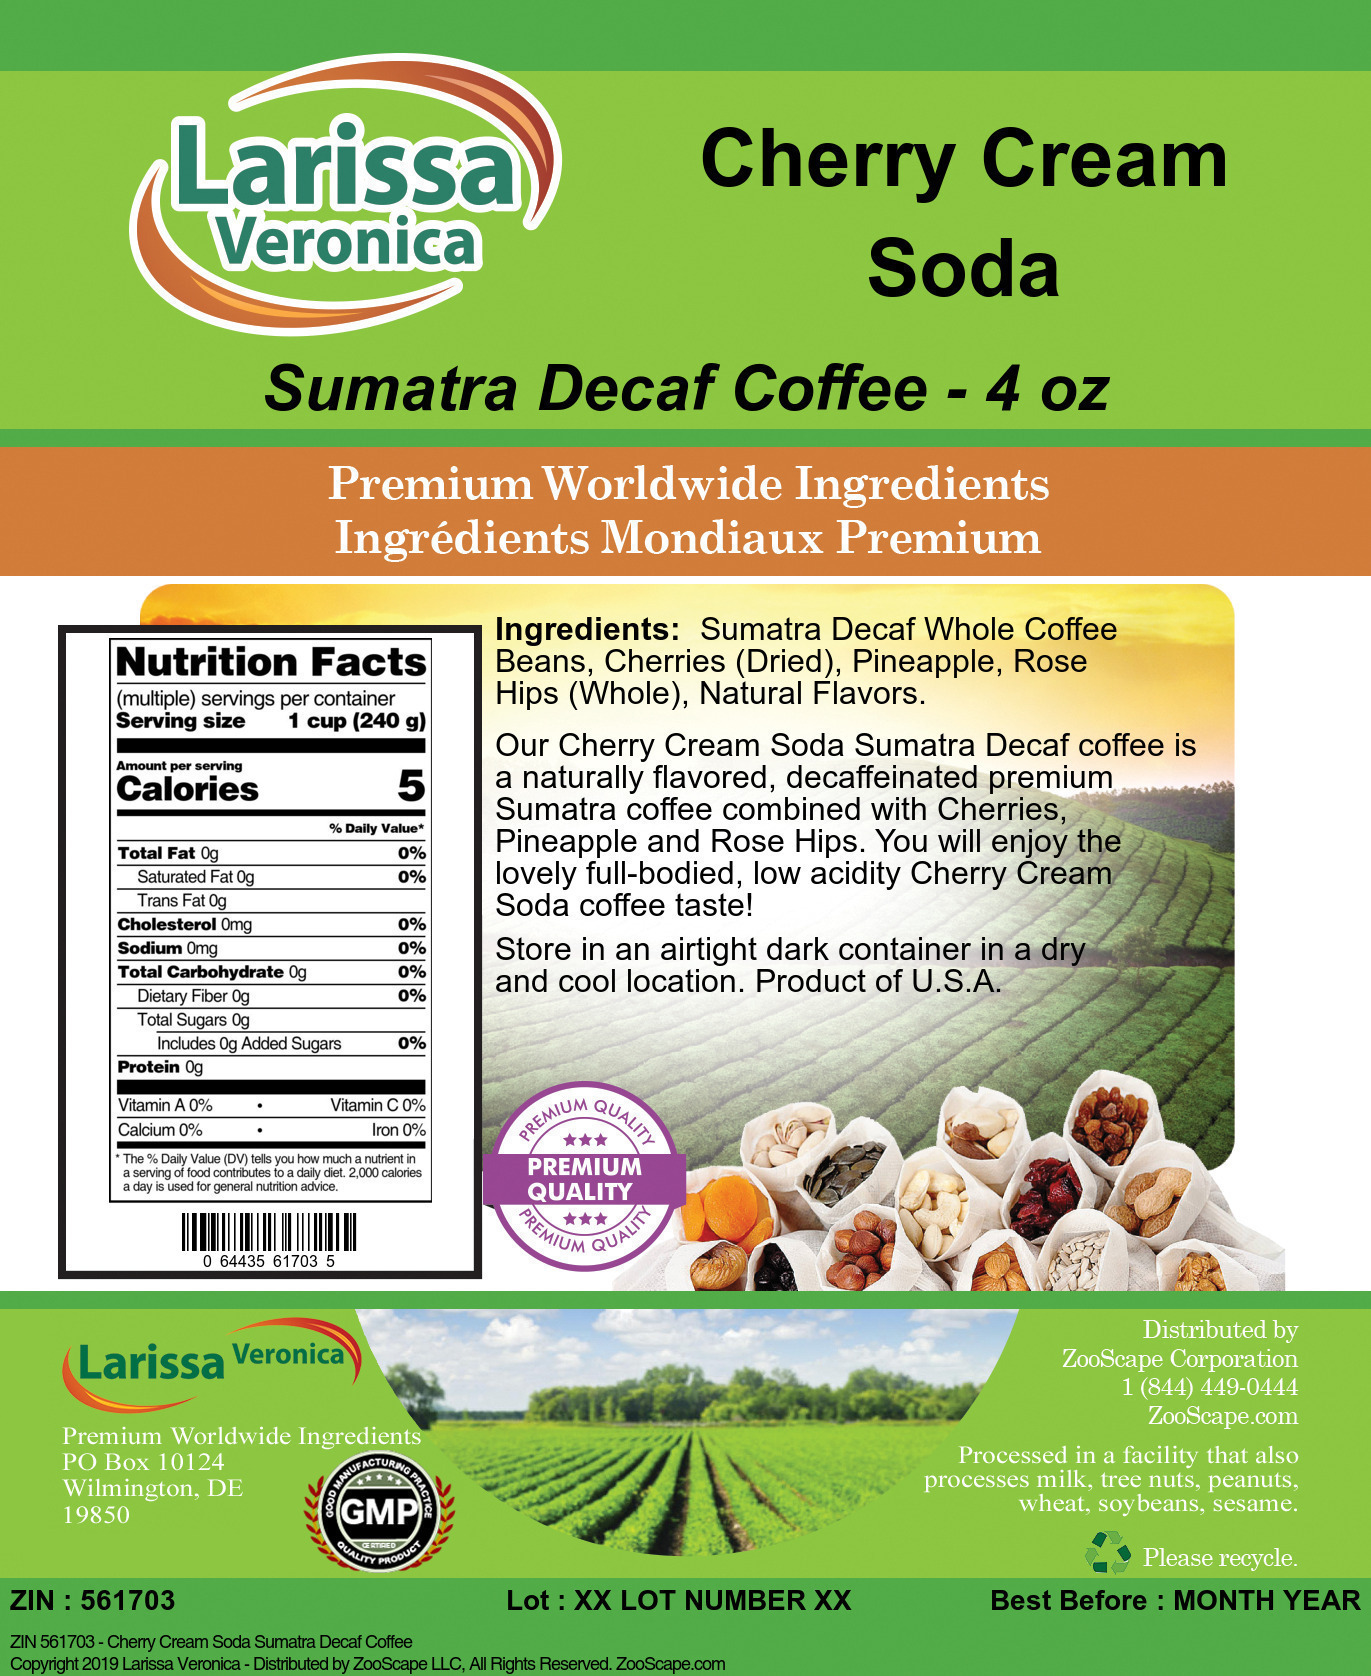 Cherry Cream Soda Sumatra Decaf Coffee - Label